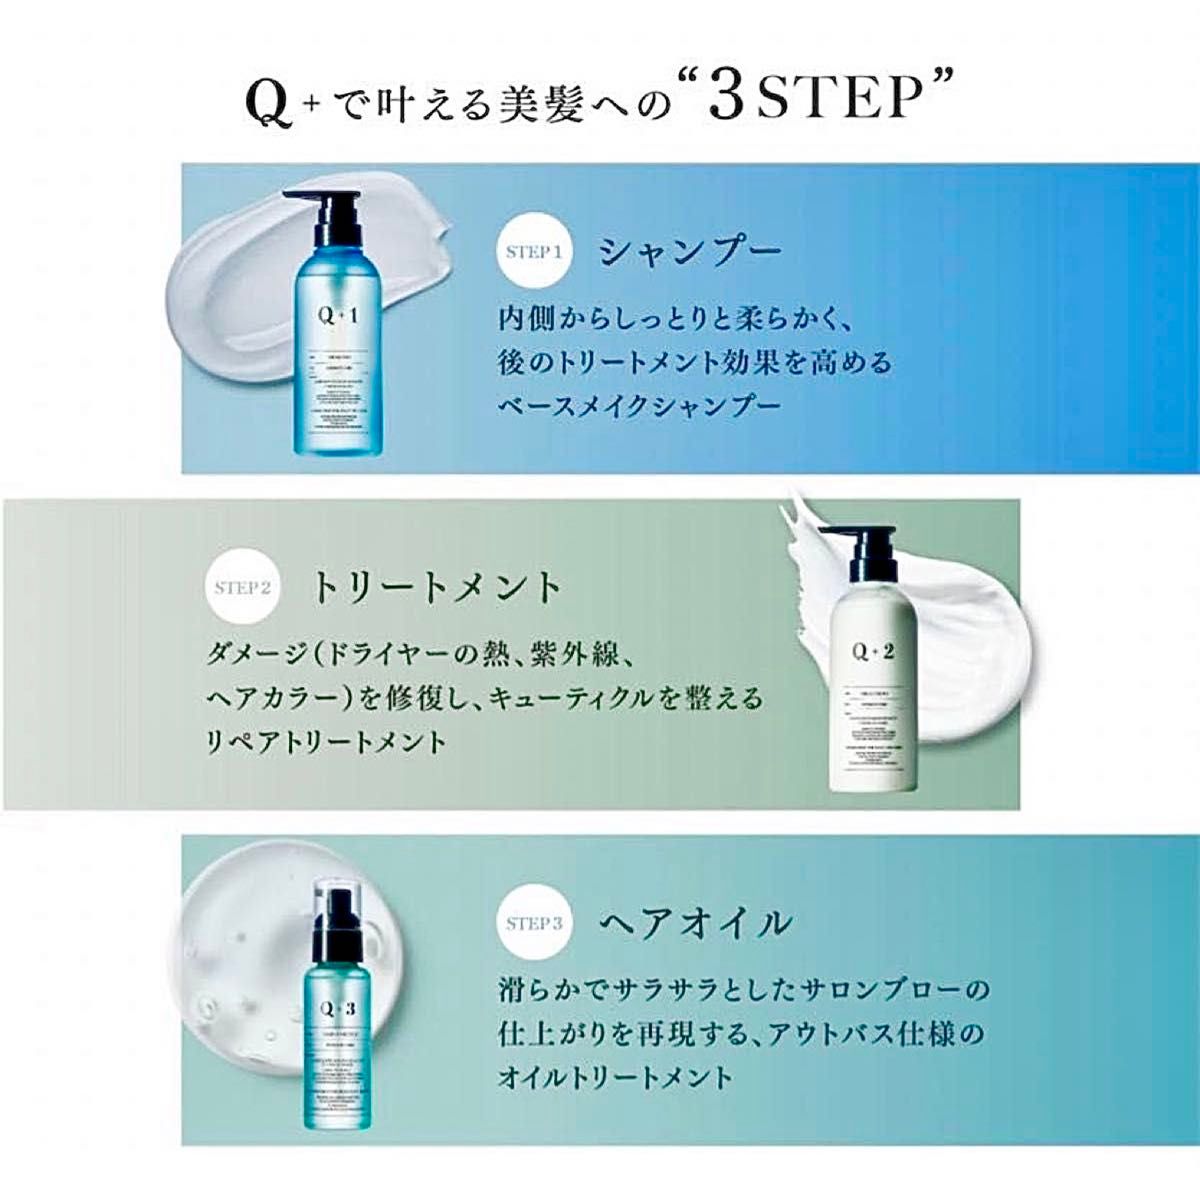 【美容室専売品】Q+ (クオリタス) シャンプー トリートメント セット 詰め替え 400ml/400g 男女兼用